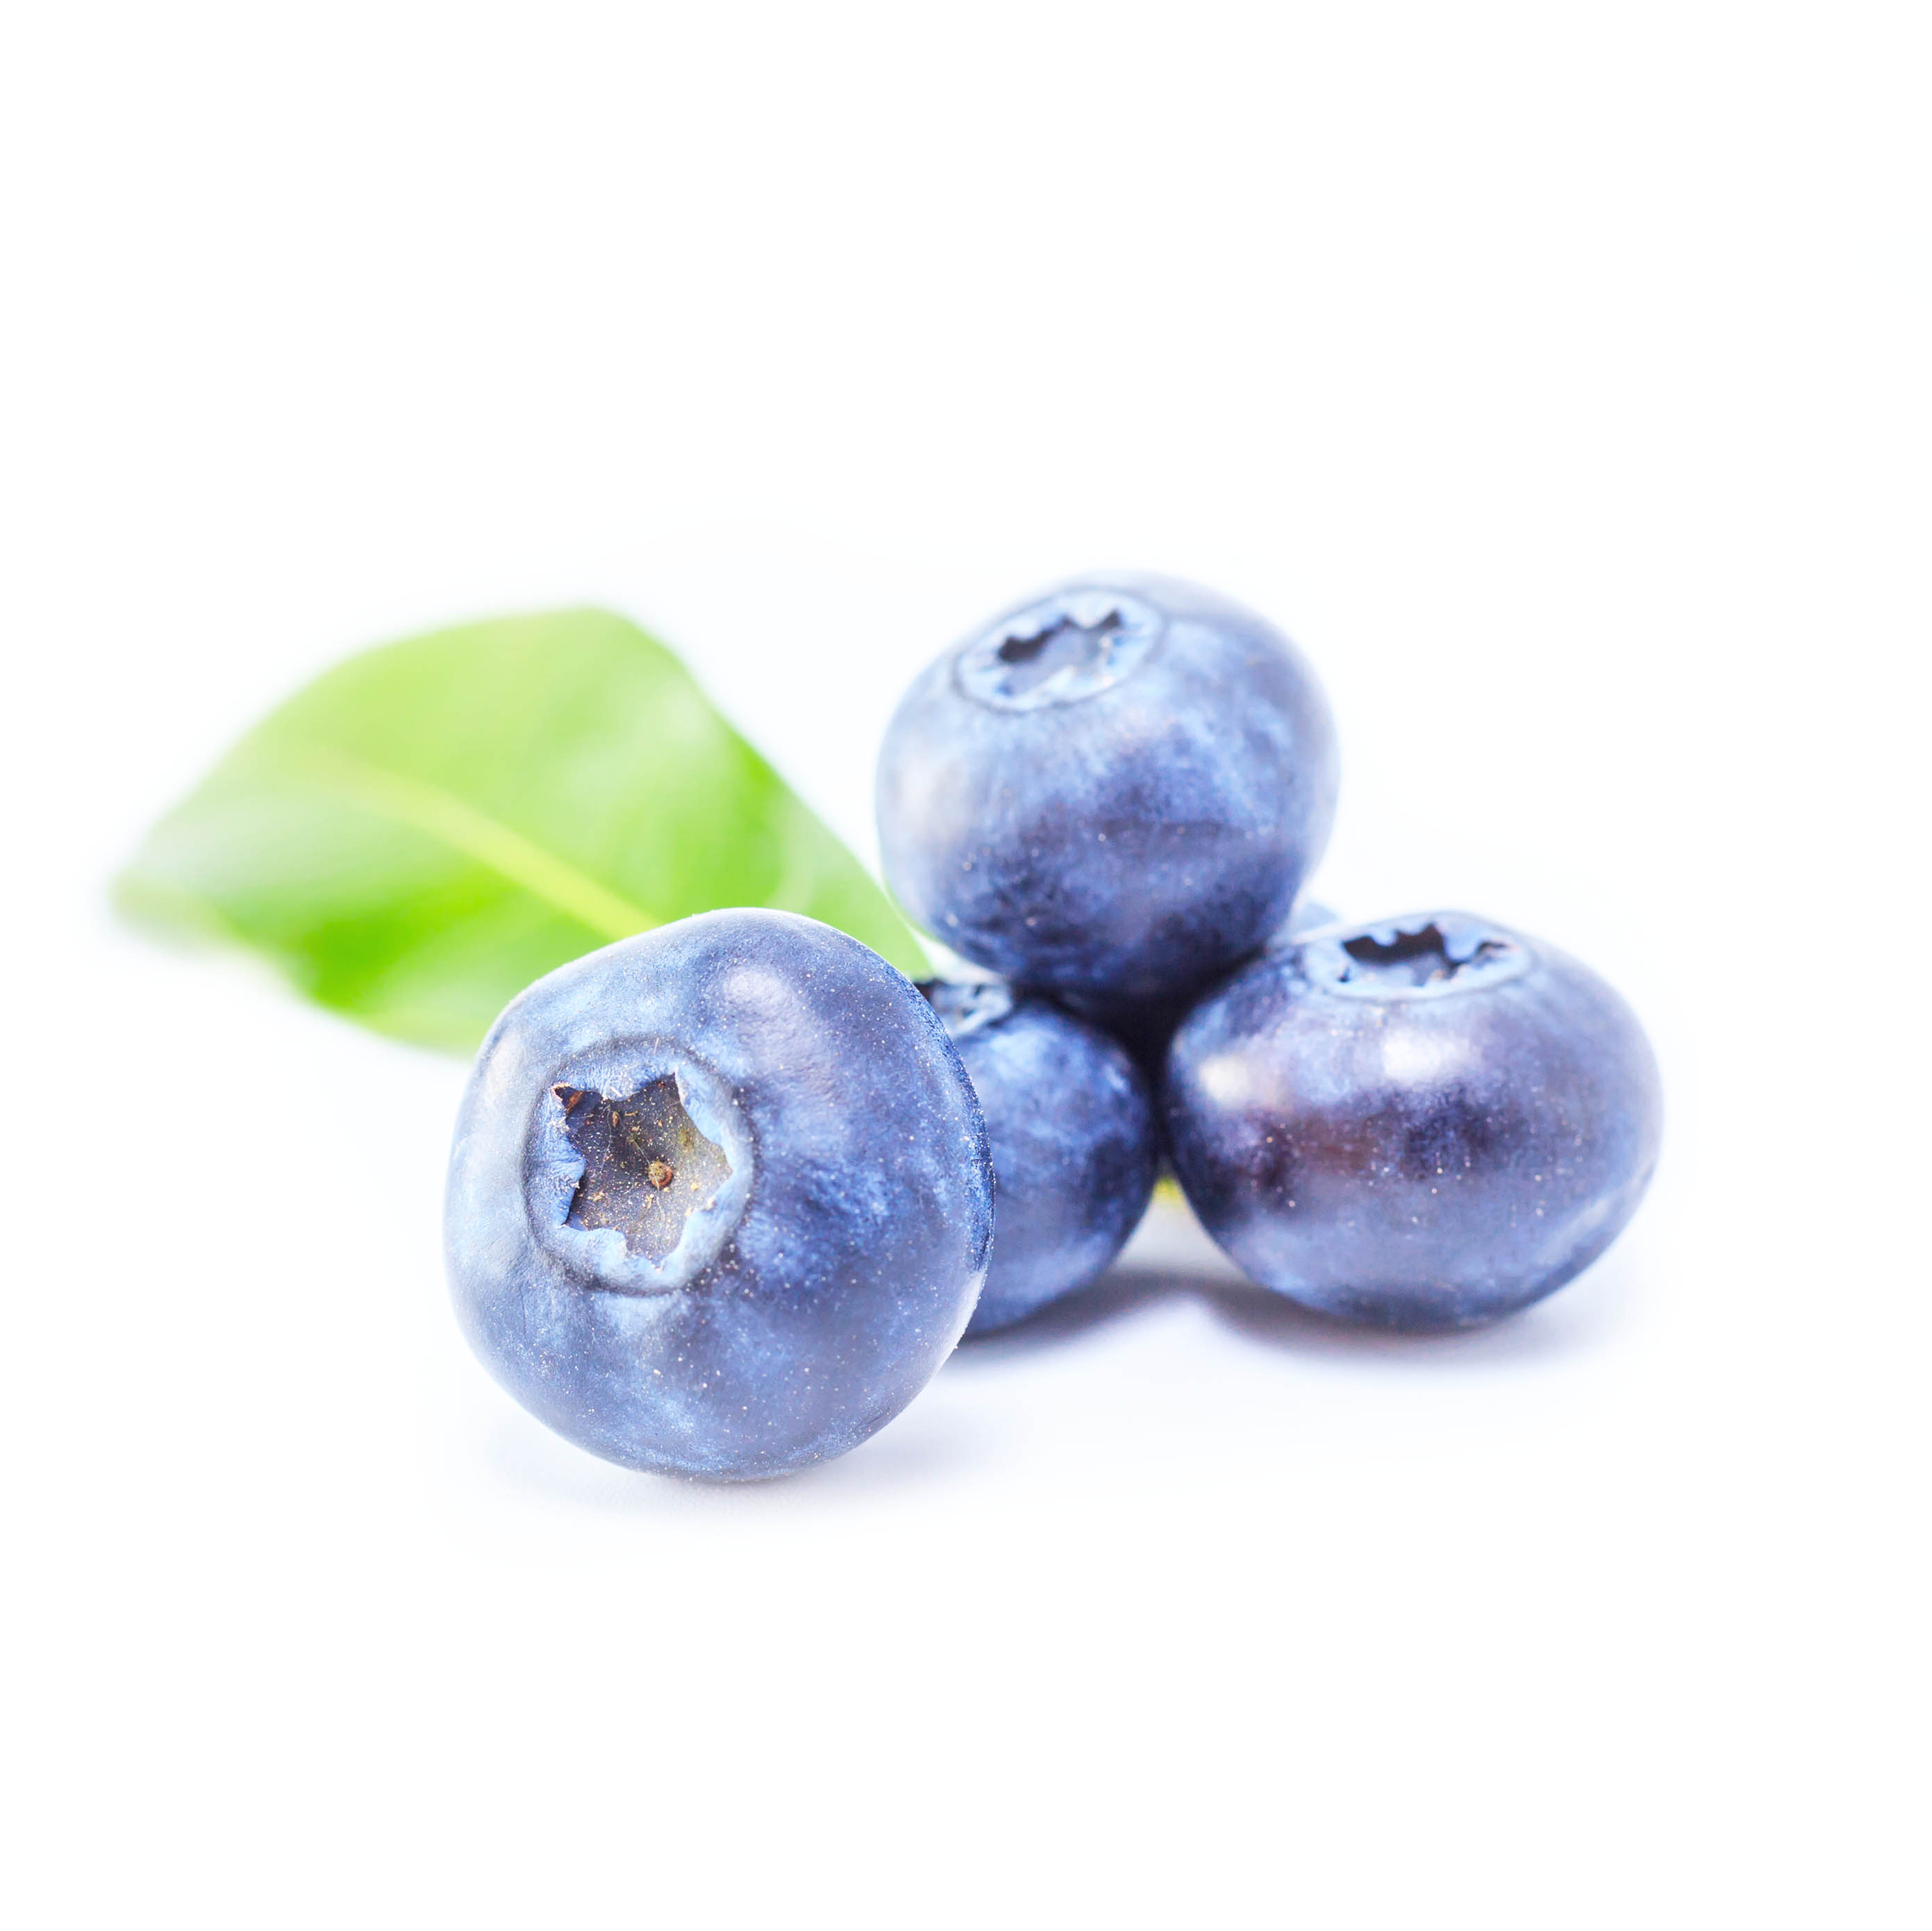 Blueberries 125g - Spain*